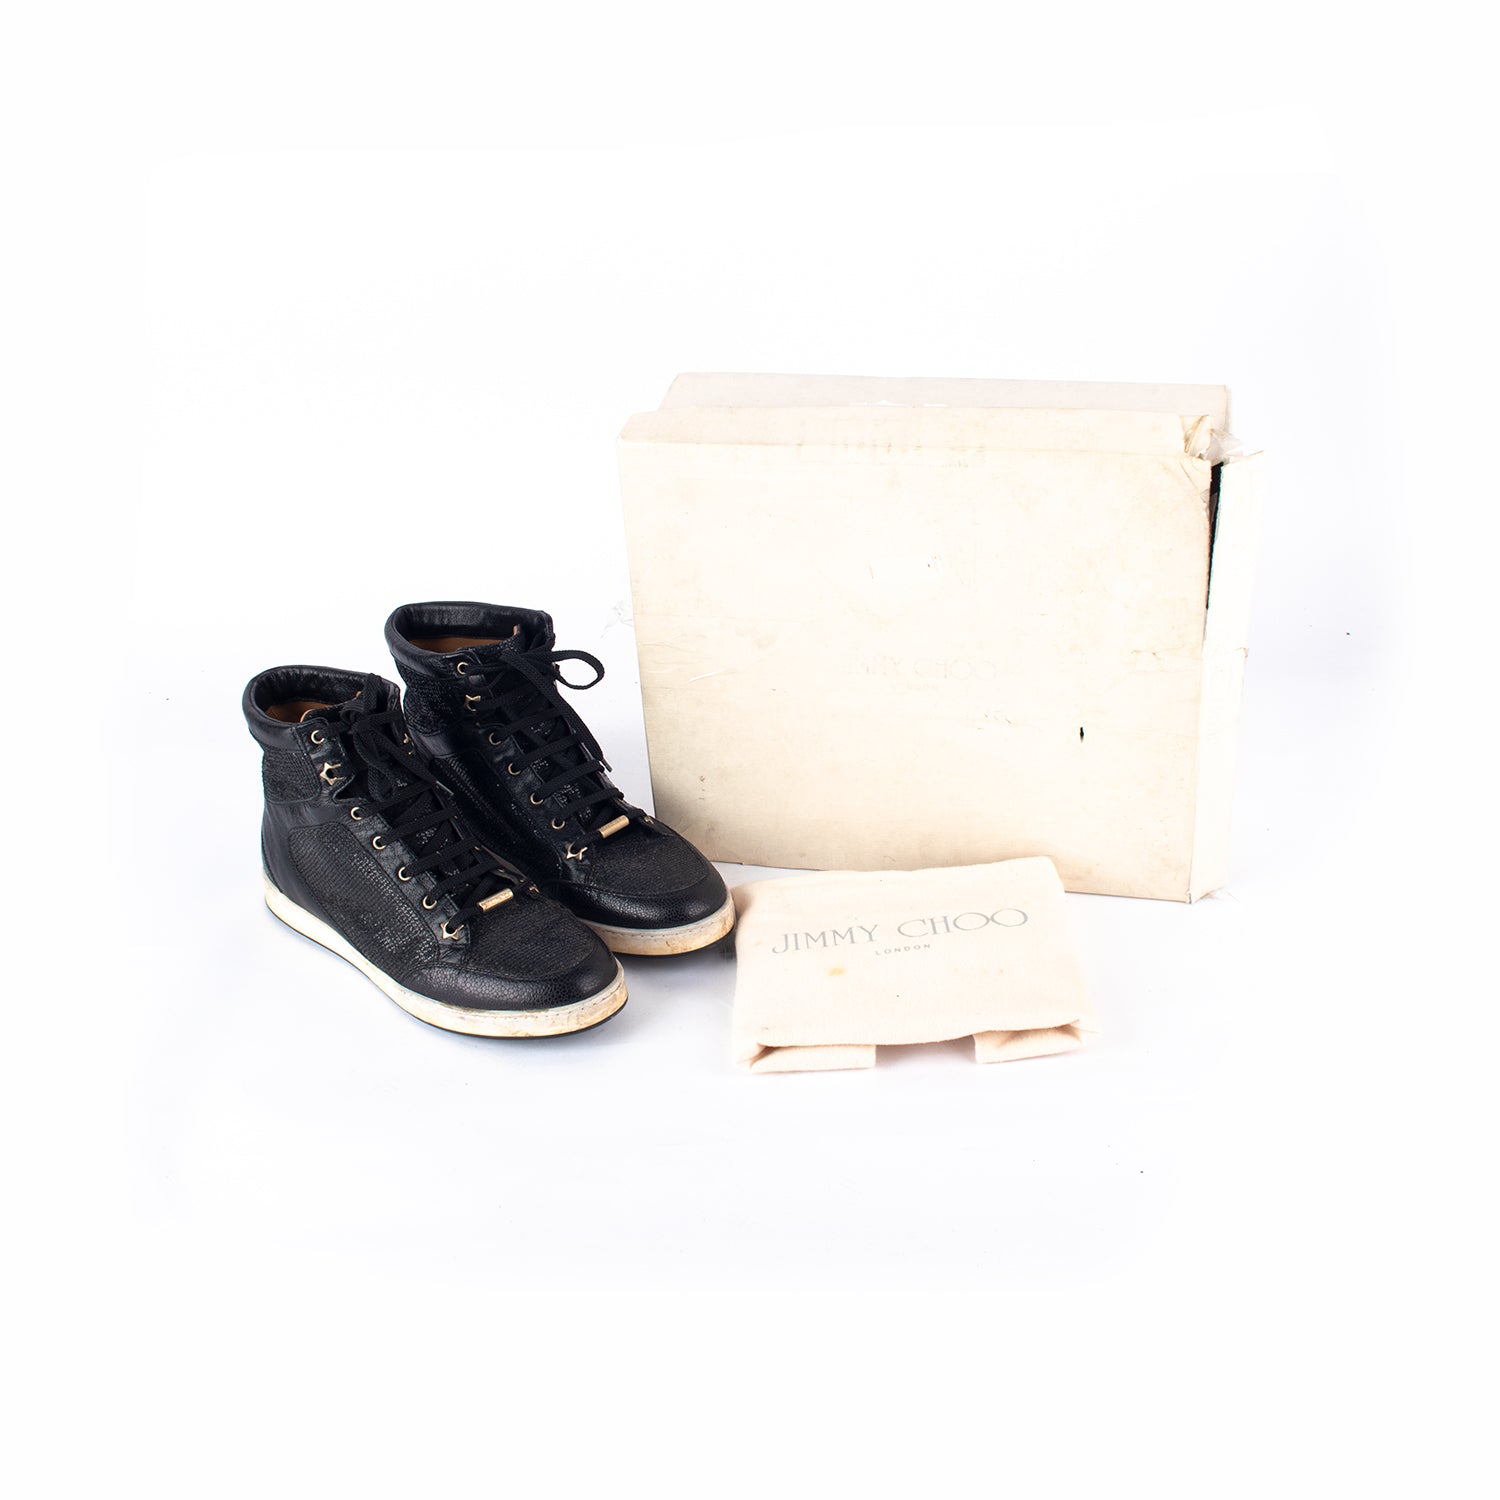 Black Shimmer Shoes-39